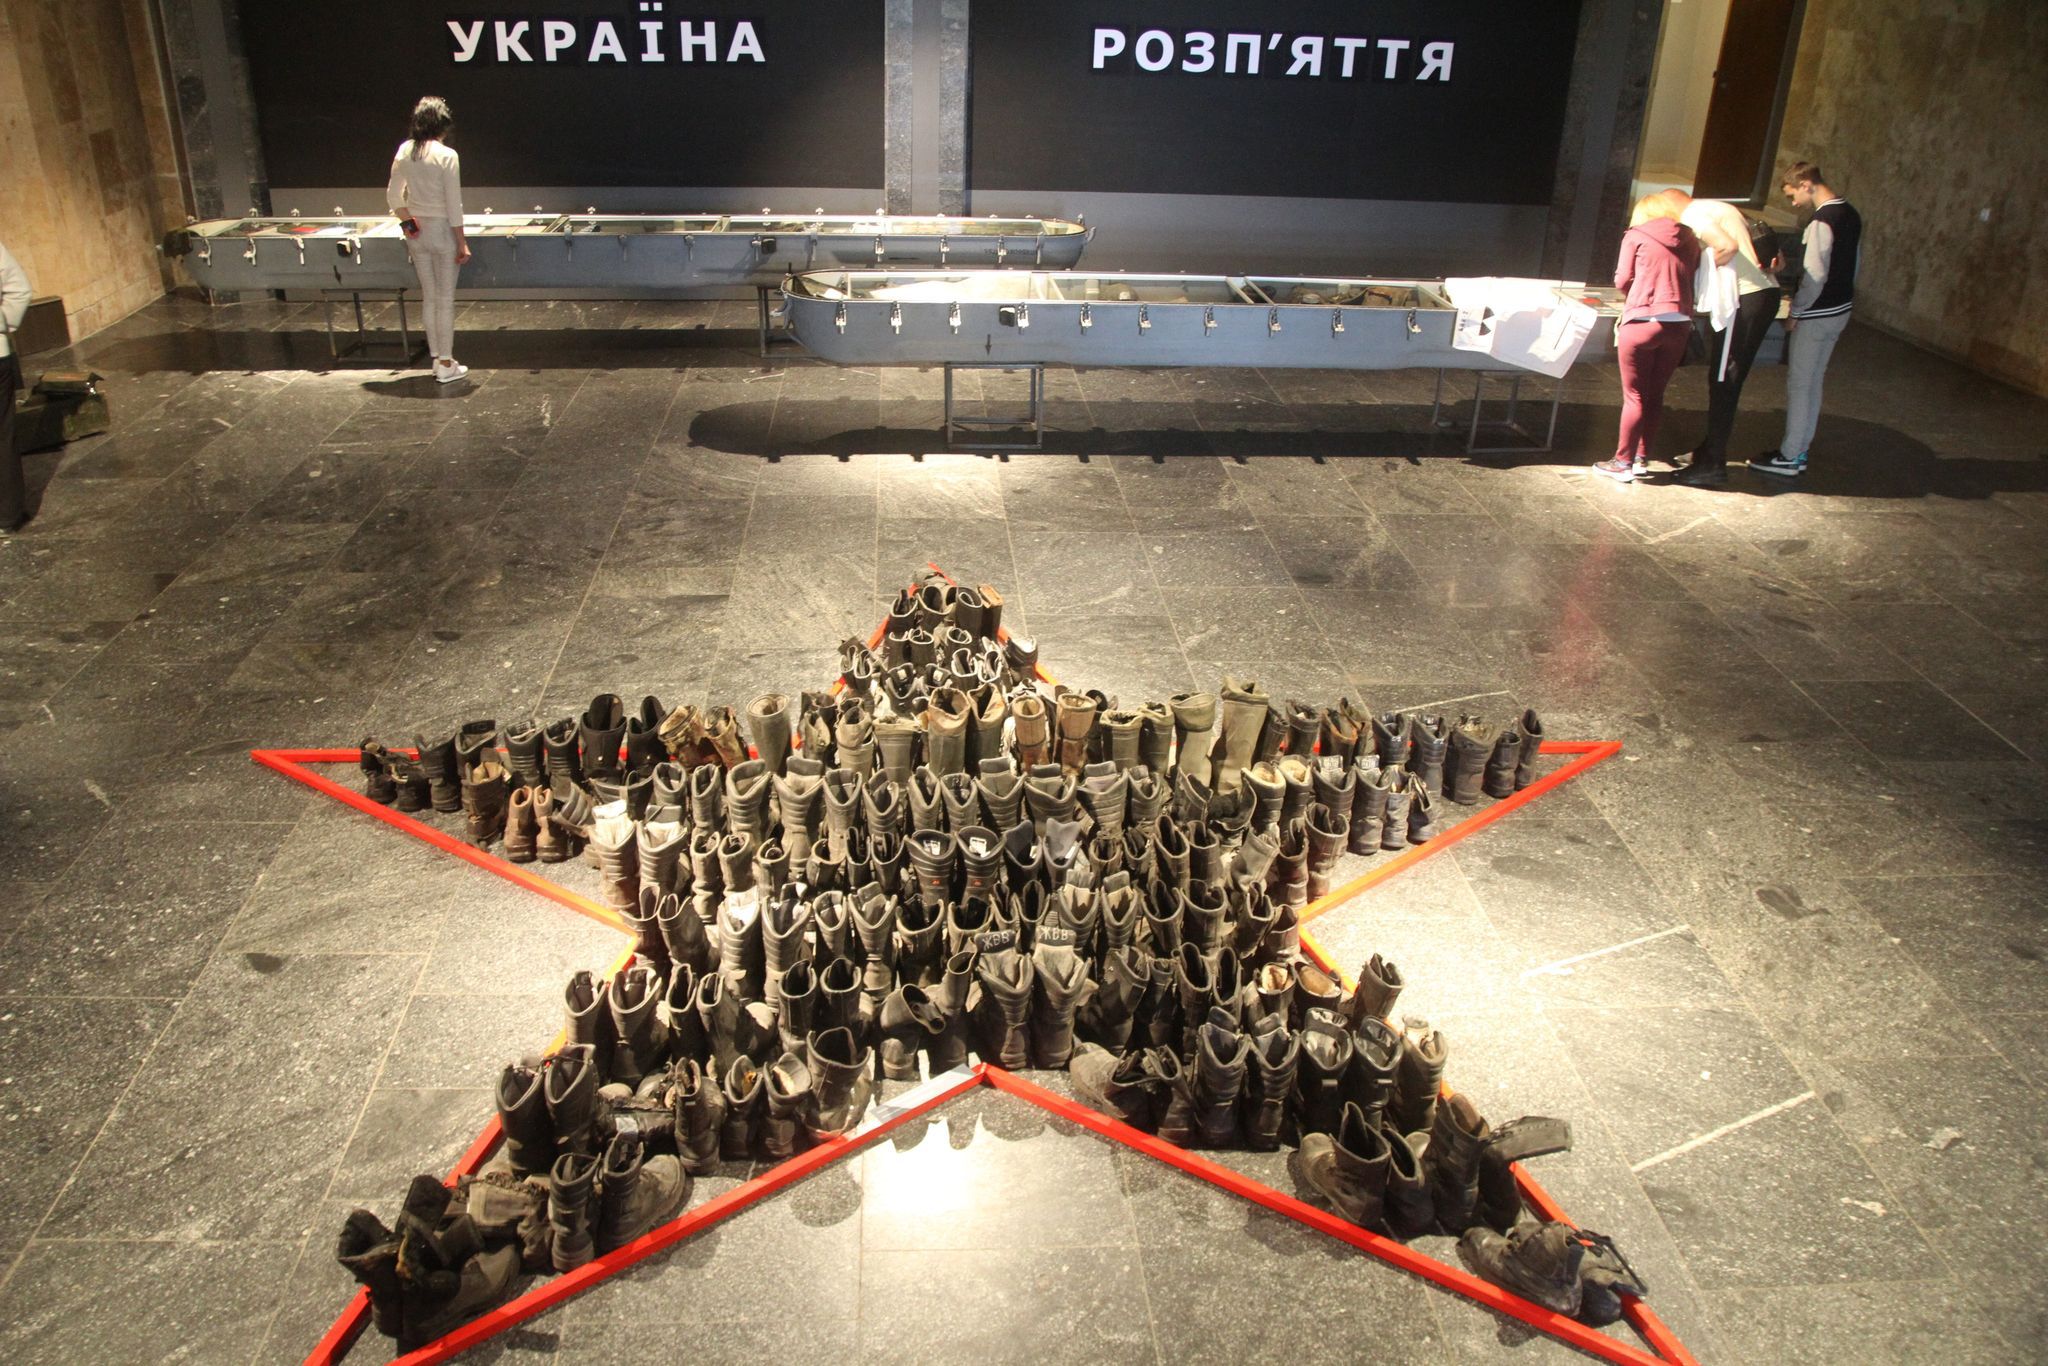 Відкрилася виставка артефактів російської агресії «Україна. Розп’яття»